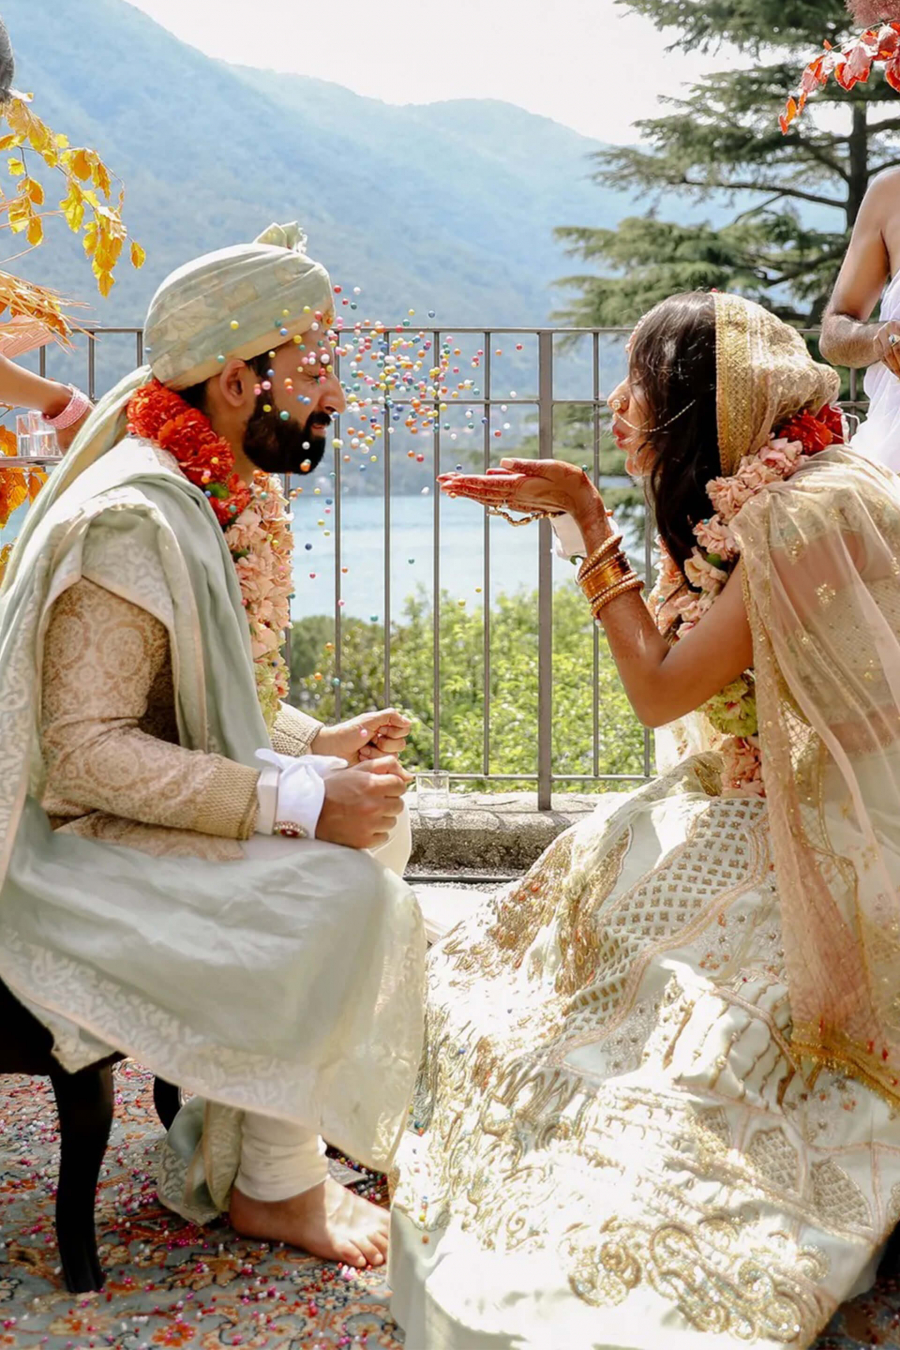  cerimonia-e-rituais-do-casamento-indiano